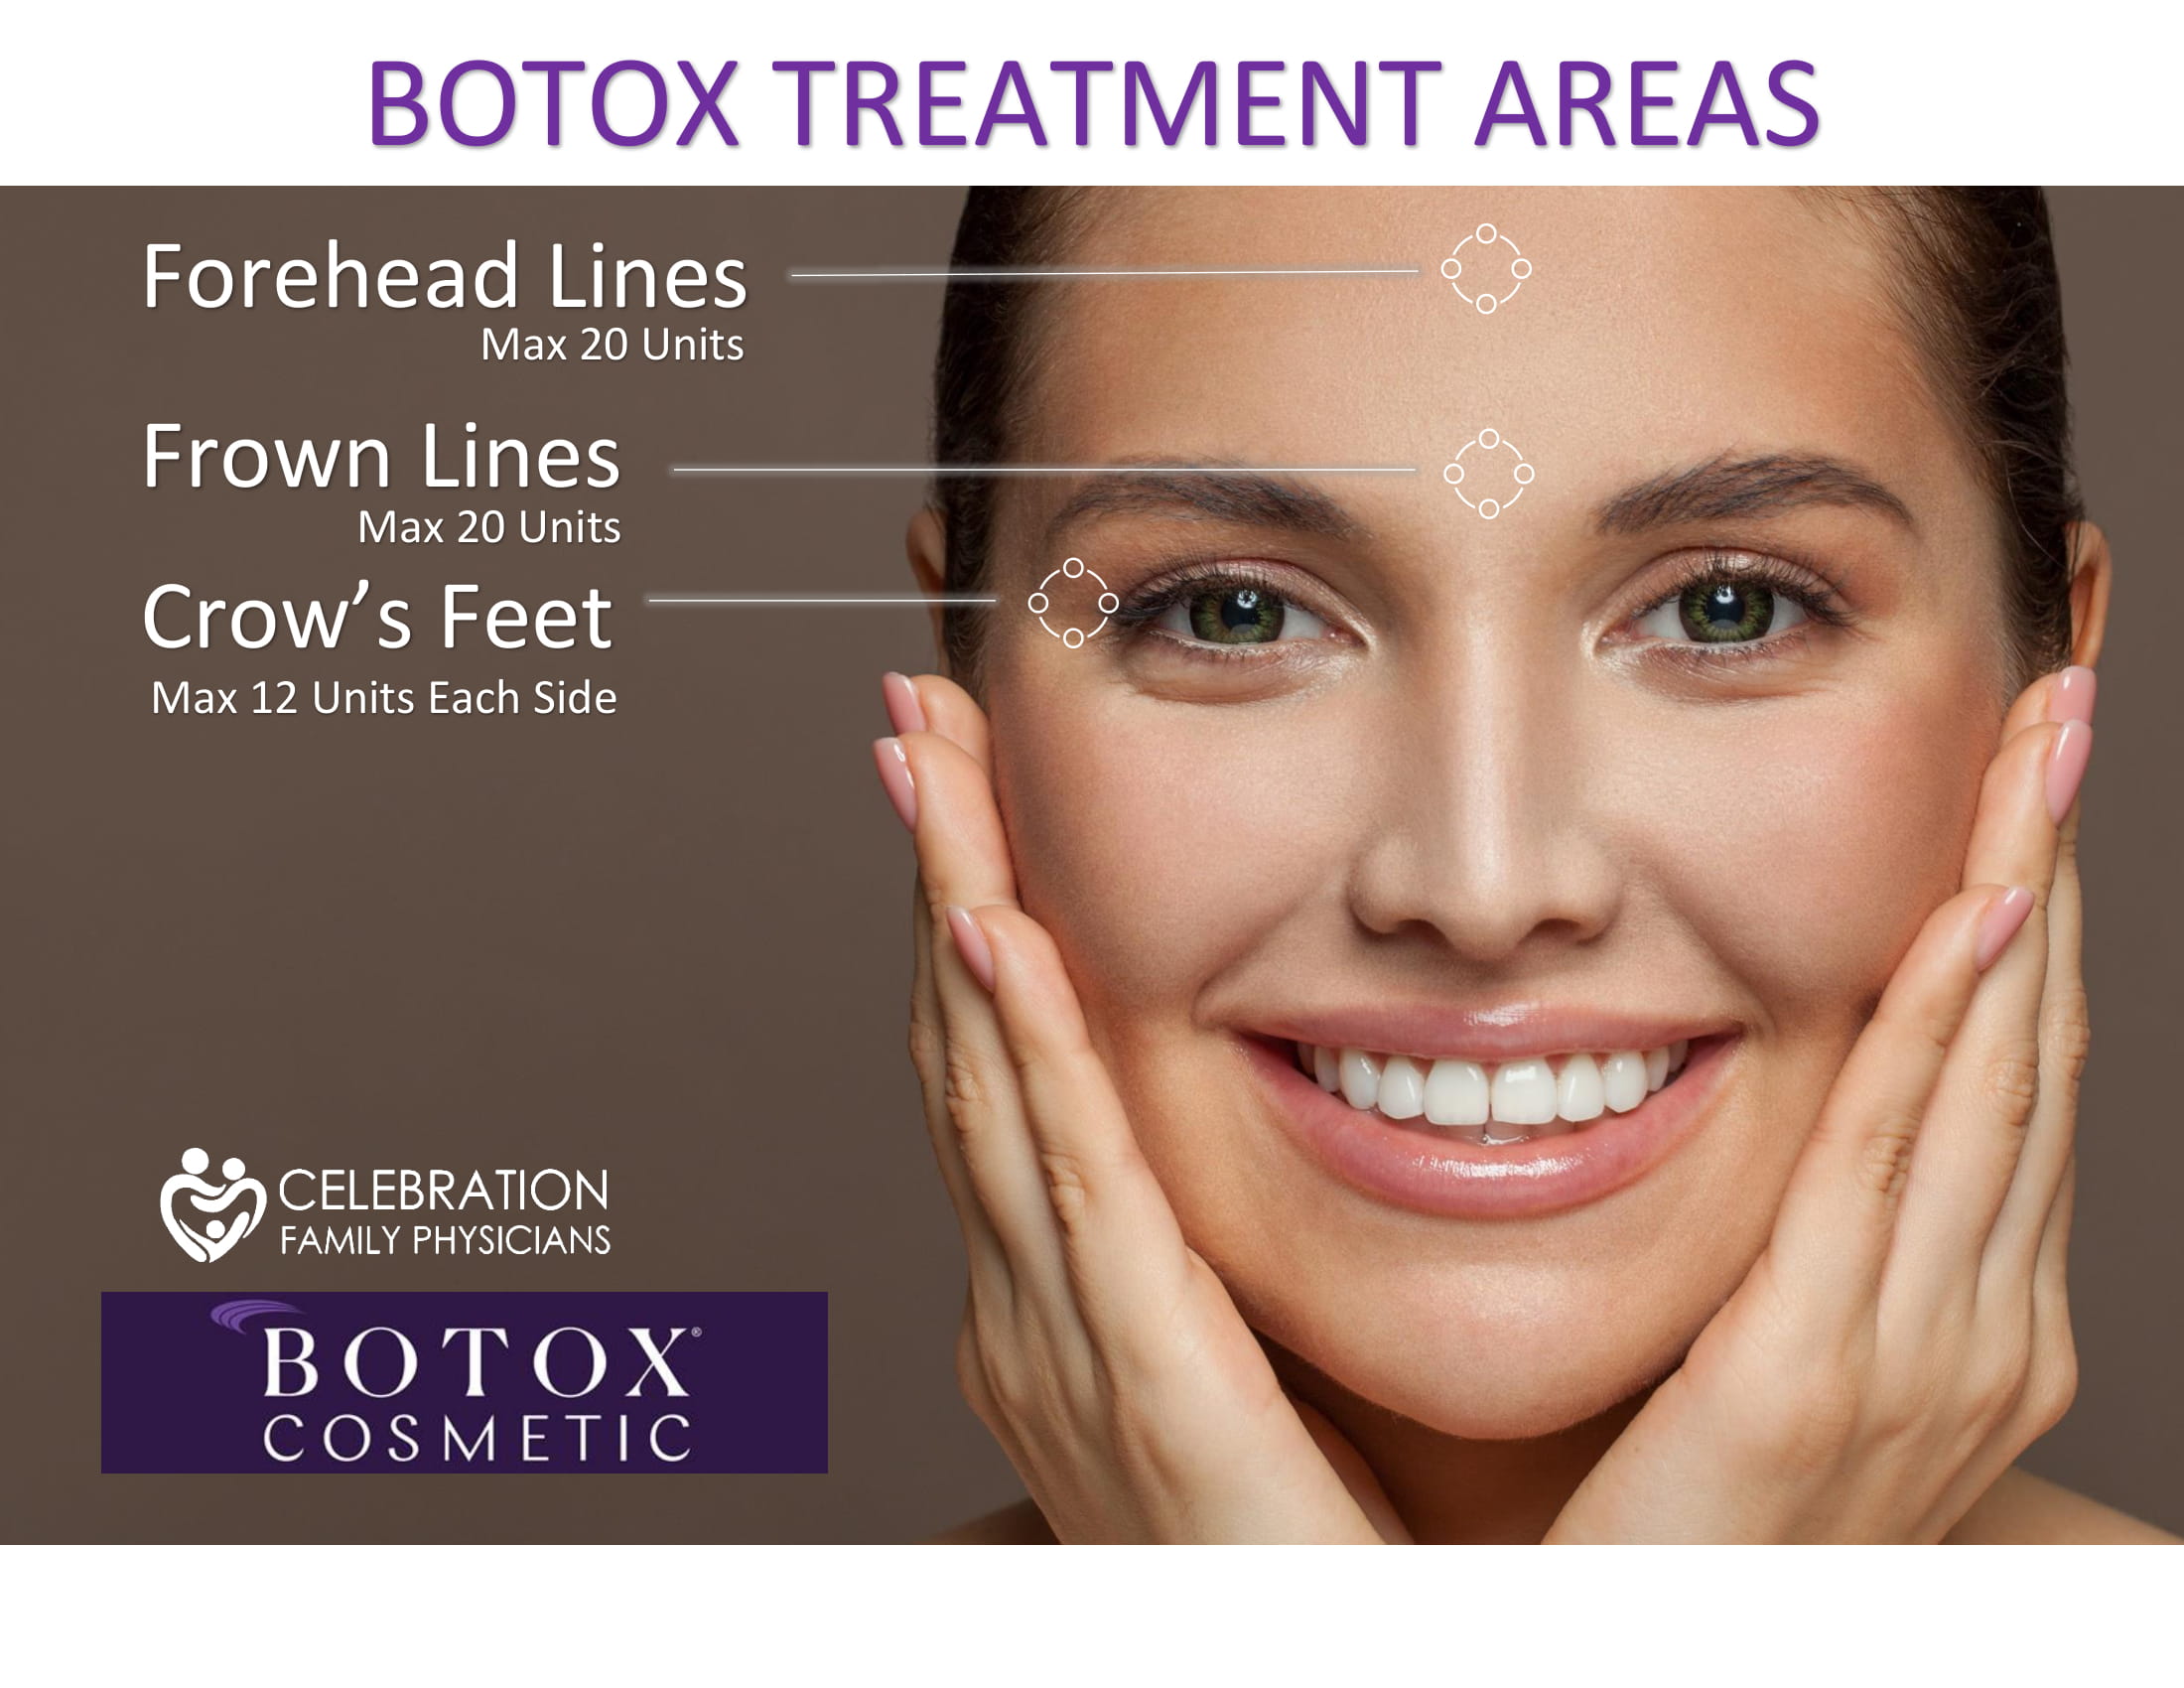 Bringing You Botox! Celebration Family Physicians